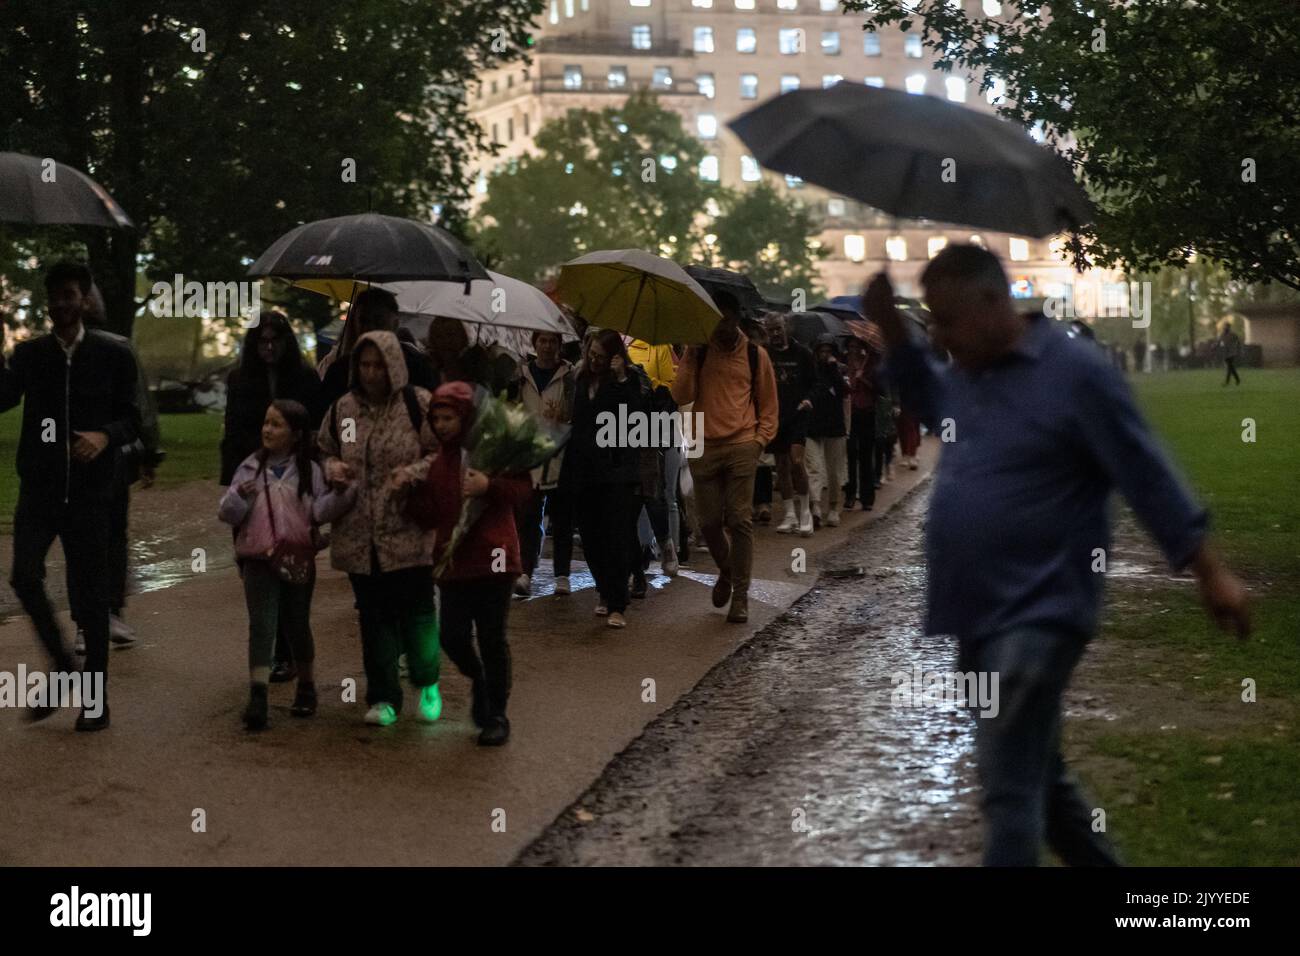 Mitglieder der Öffentlichkeit laufen im Regen durch den grünen Park in Richtung Buckingham Palace, nachdem bekannt wurde, dass Königin Elizabeth II. Am 08./09/2022. Gestorben war Stockfoto